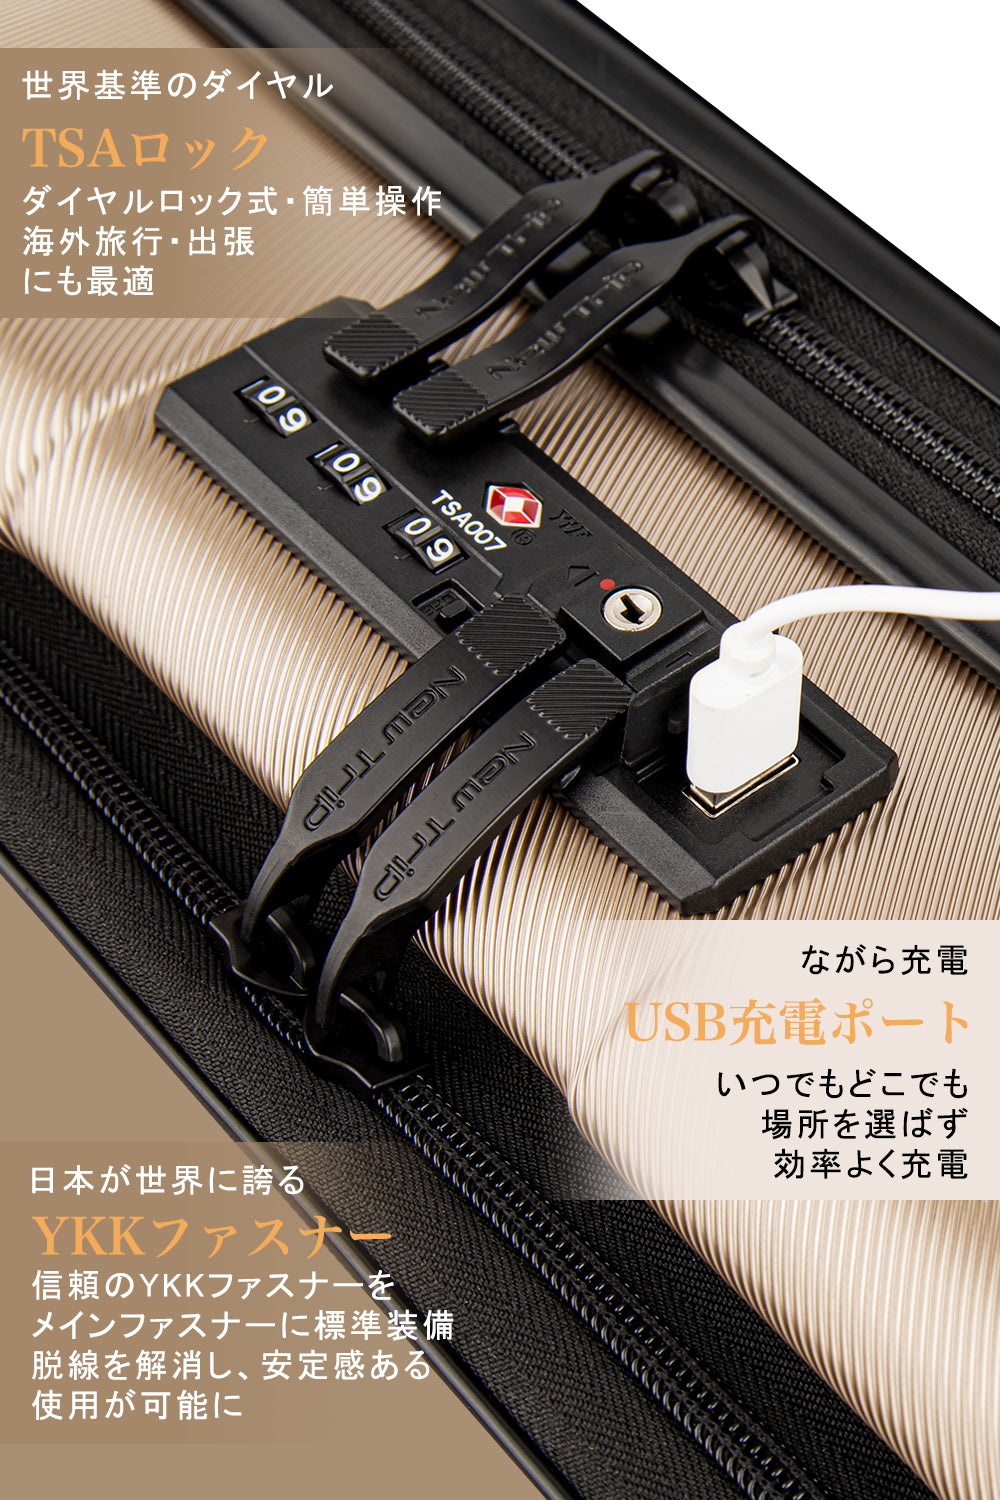 [New Trip] キャリーケース フロントオープン 機内持ち込み USBポート付き ストッパー付き スーツケース  旅行 出張 1-4泊 40リットル Sサイズ シャンパンゴールド